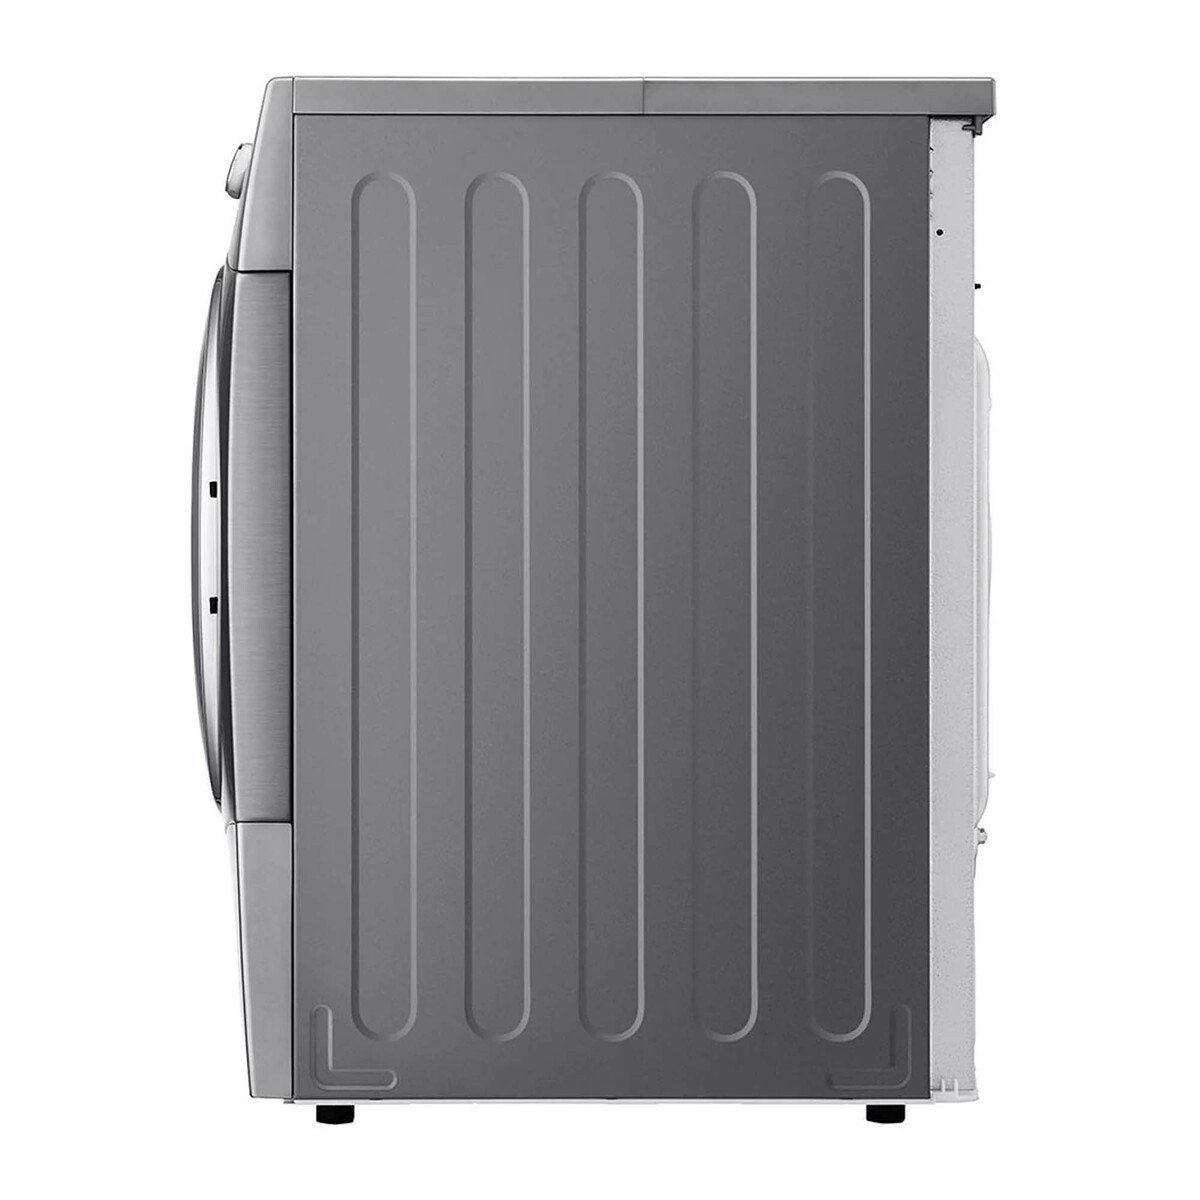 LG Front Load Condenser Dryer Sensor Dry, Smart Diagnosis™ RC8066G2F 8Kg